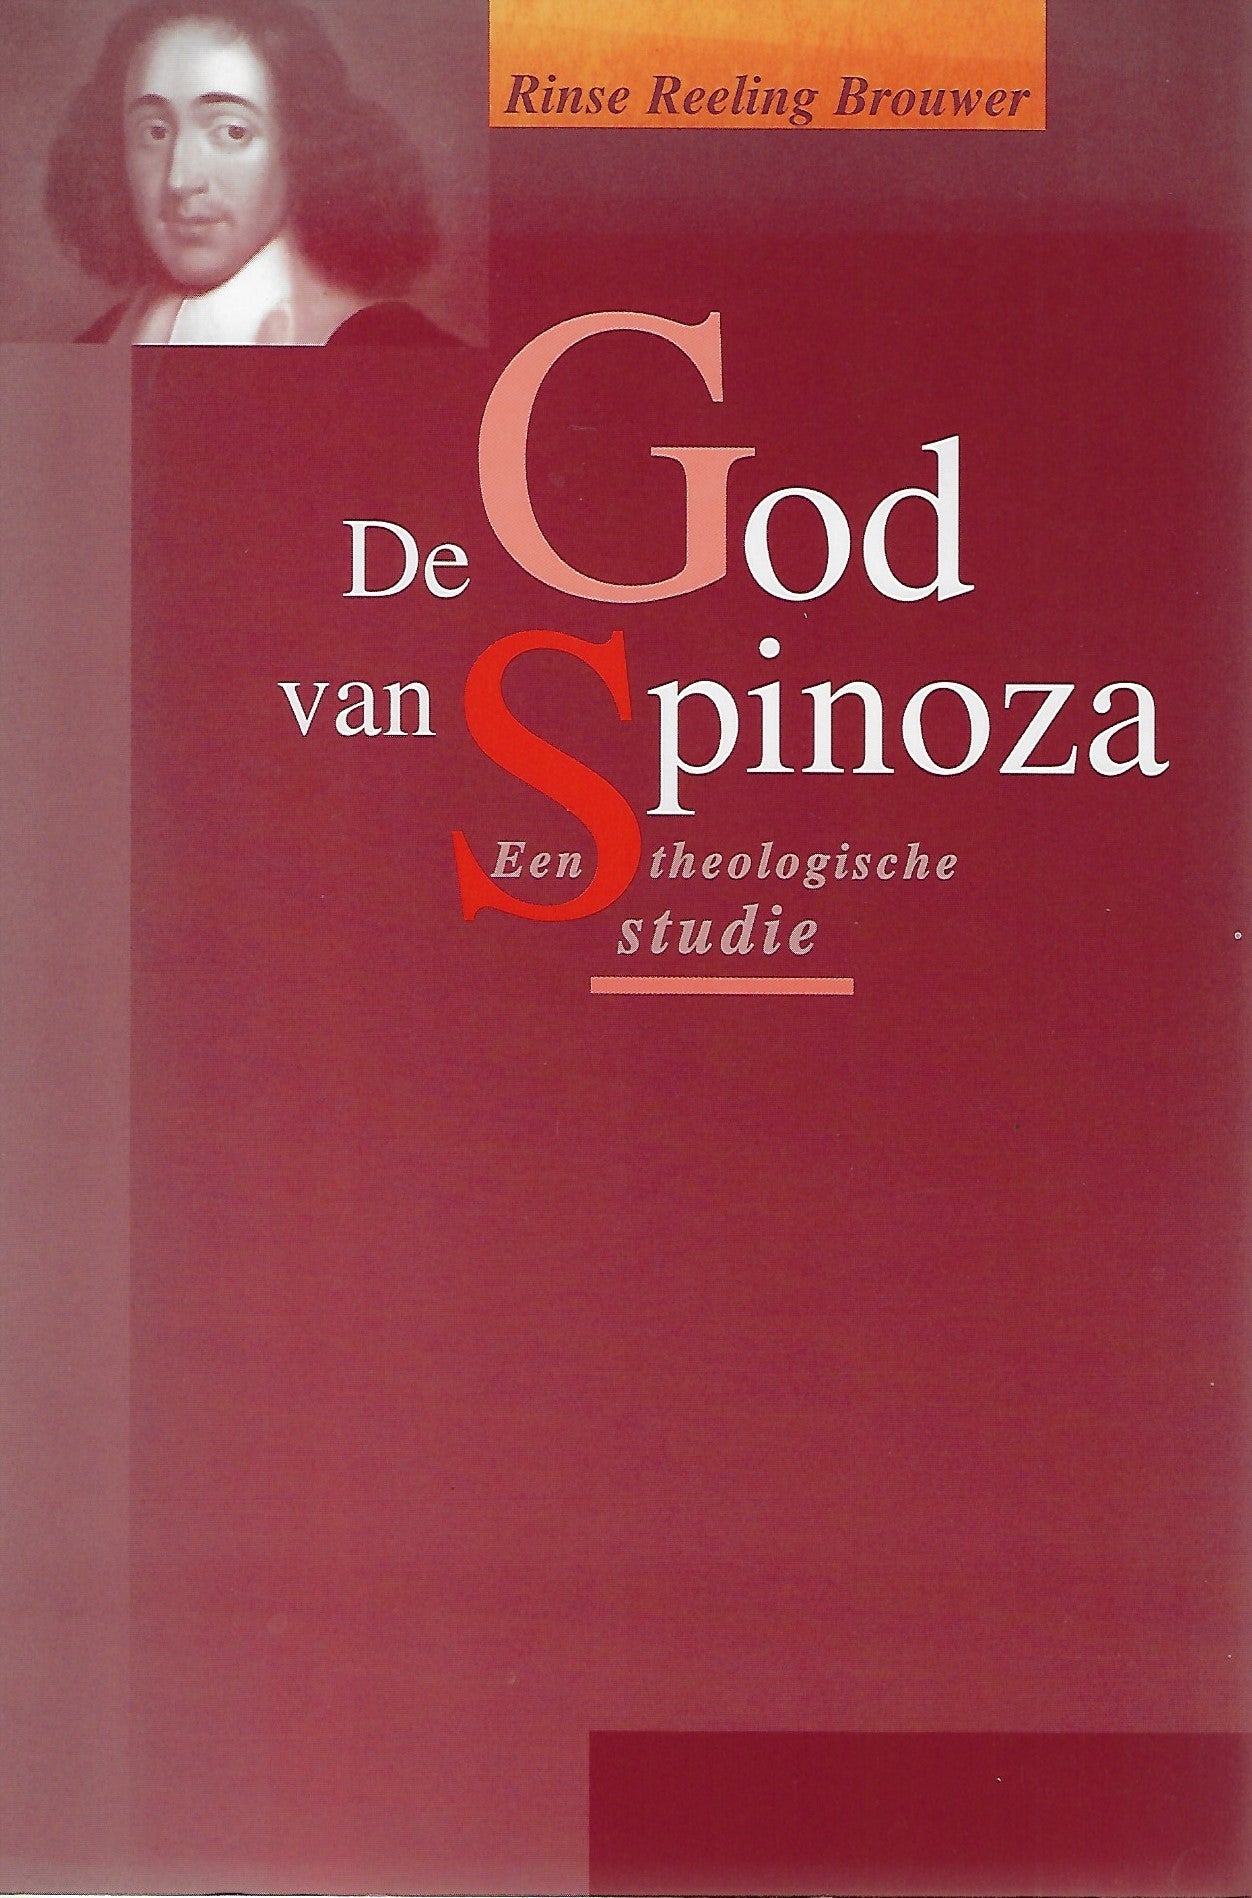 De God van Spinoza